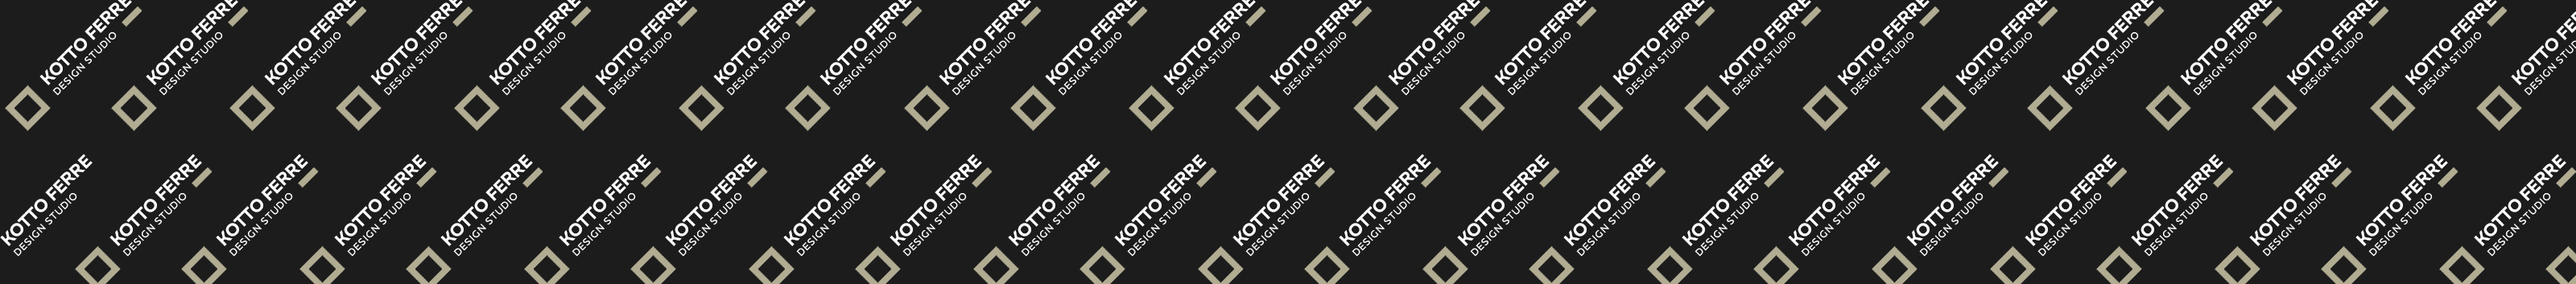 Kotto Ferre's profile banner